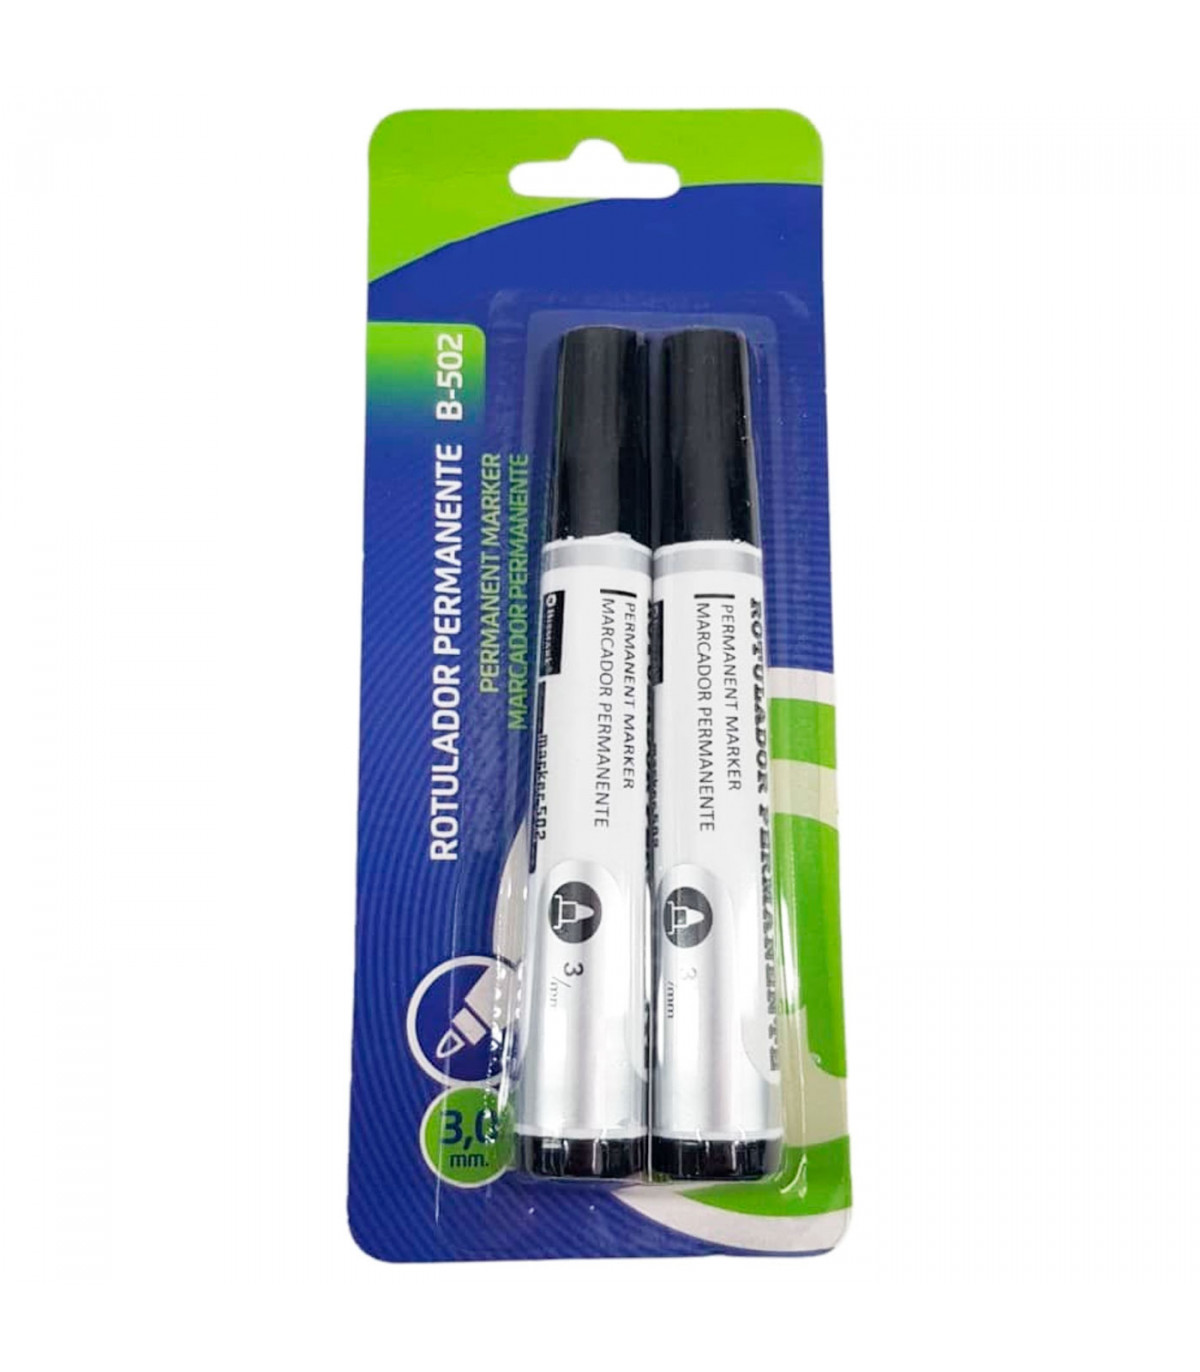 Tradineur - Pack de 3 bolígrafos borrables de colores, punta retráctil de  0,7 mm y grip de goma, escritura suave y precisa, uso